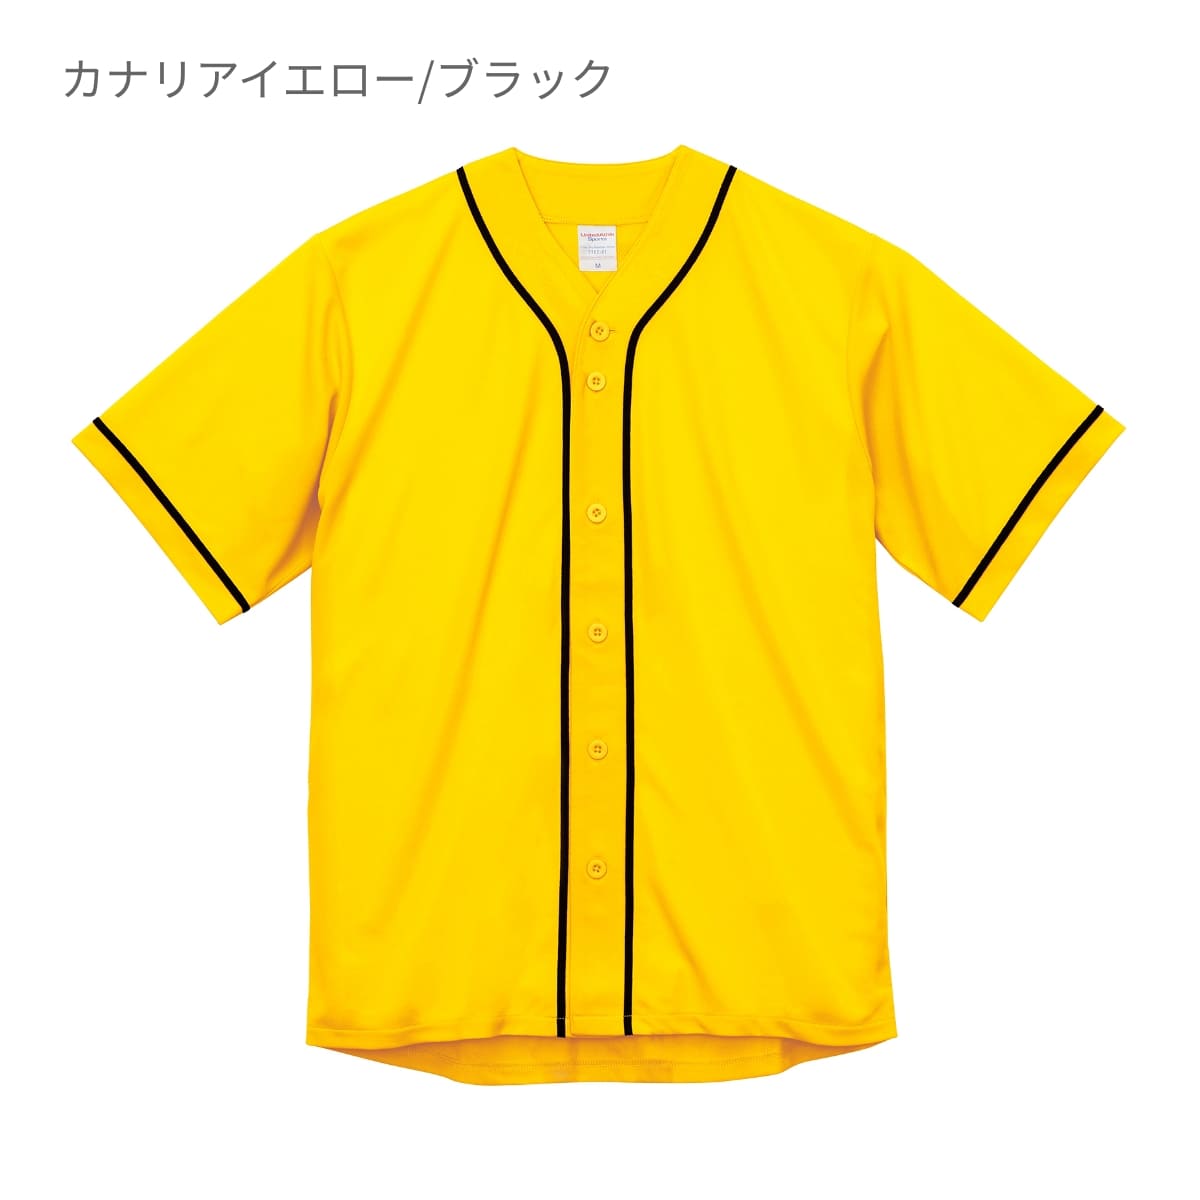 4.1オンス ドライアスレチック ベースボールシャツ カナリアイエロー/ブラック XXL